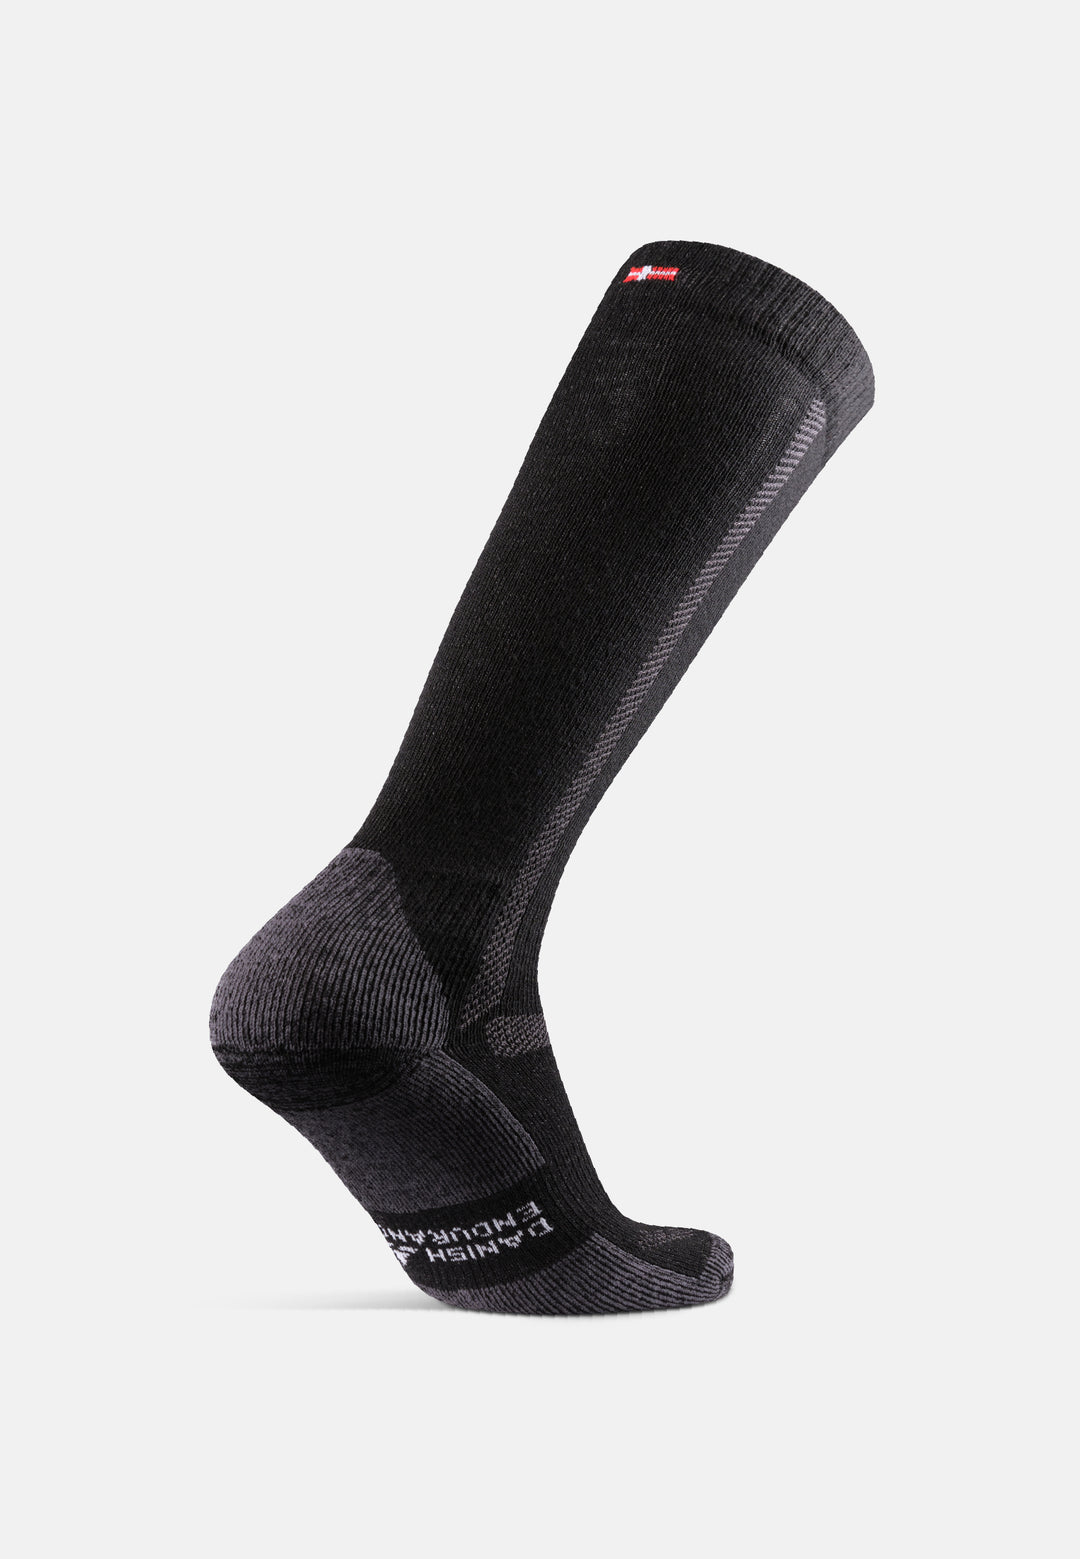 DANISH ENDURANCE Wool Athletic Socks for Men